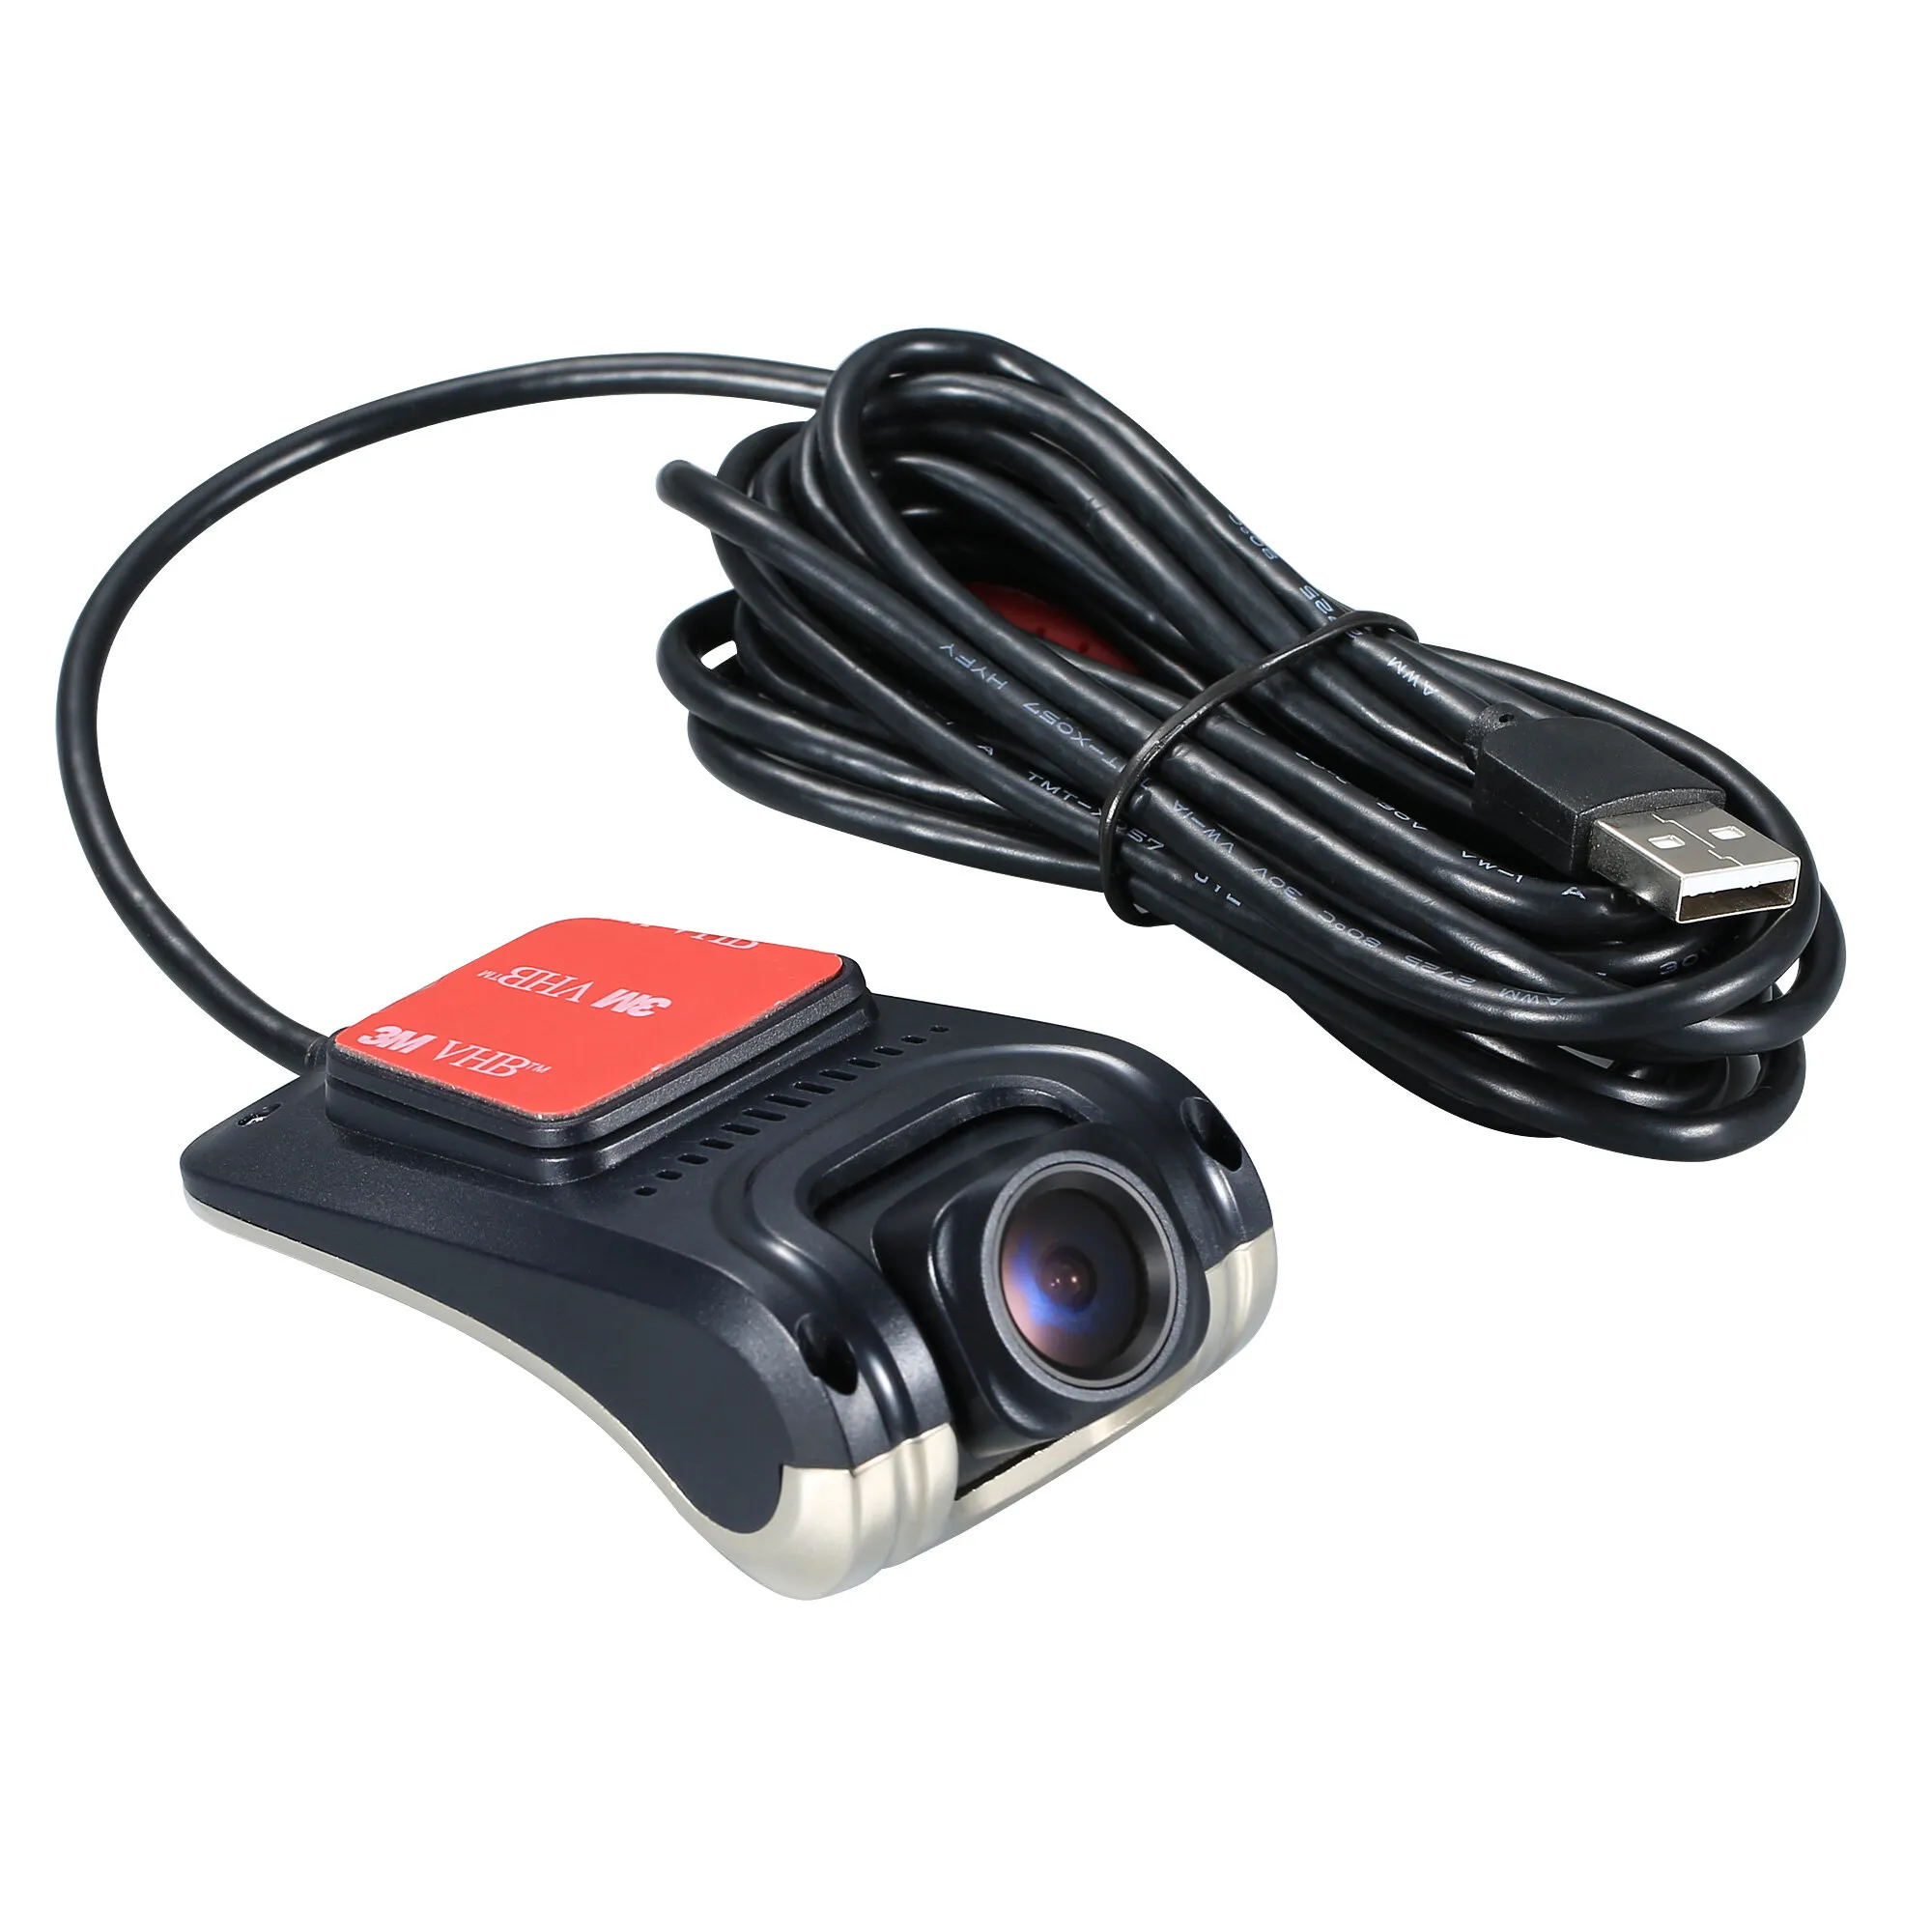 Dashcam per auto con telecamera 720p HD e angolo visuale di 140°, registratore di guida F2.0 a grande apertura e visione